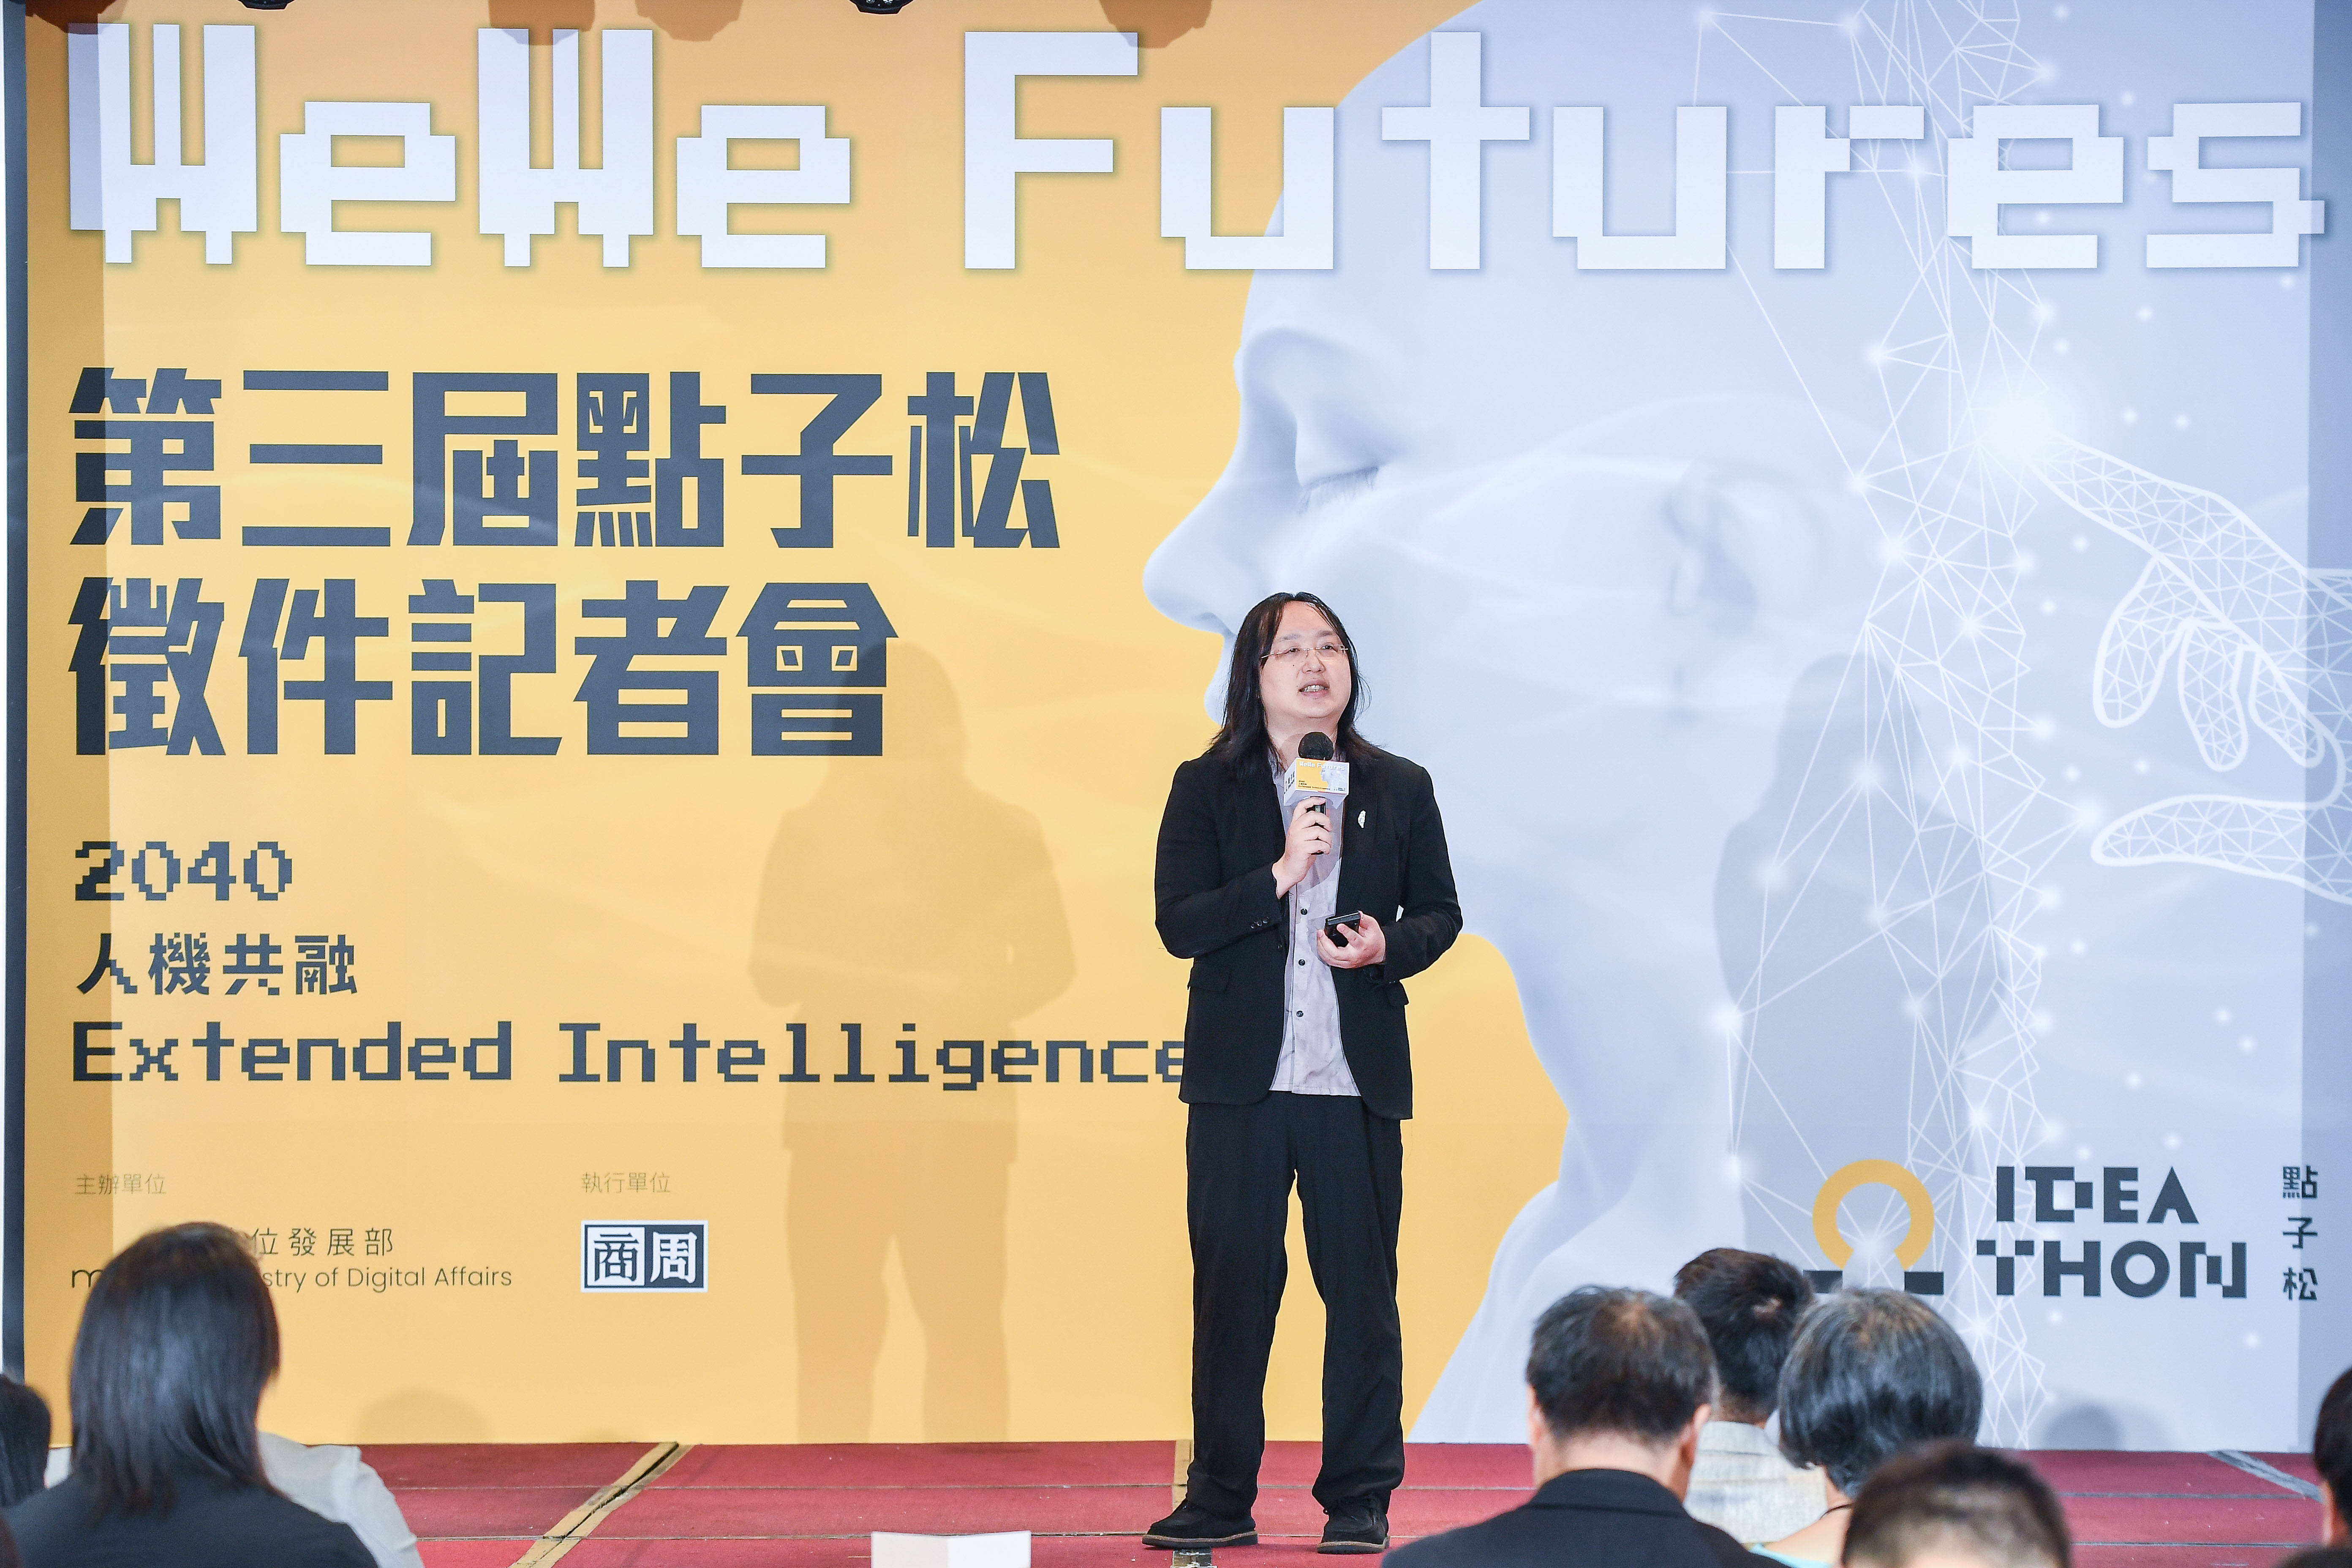 数位部长唐凤指出，人工智慧让进步速度越来越快，因此举办点子松活动希望邀请全民一起发想未来，成为推动社会进步的动力。图/数位发展部提供